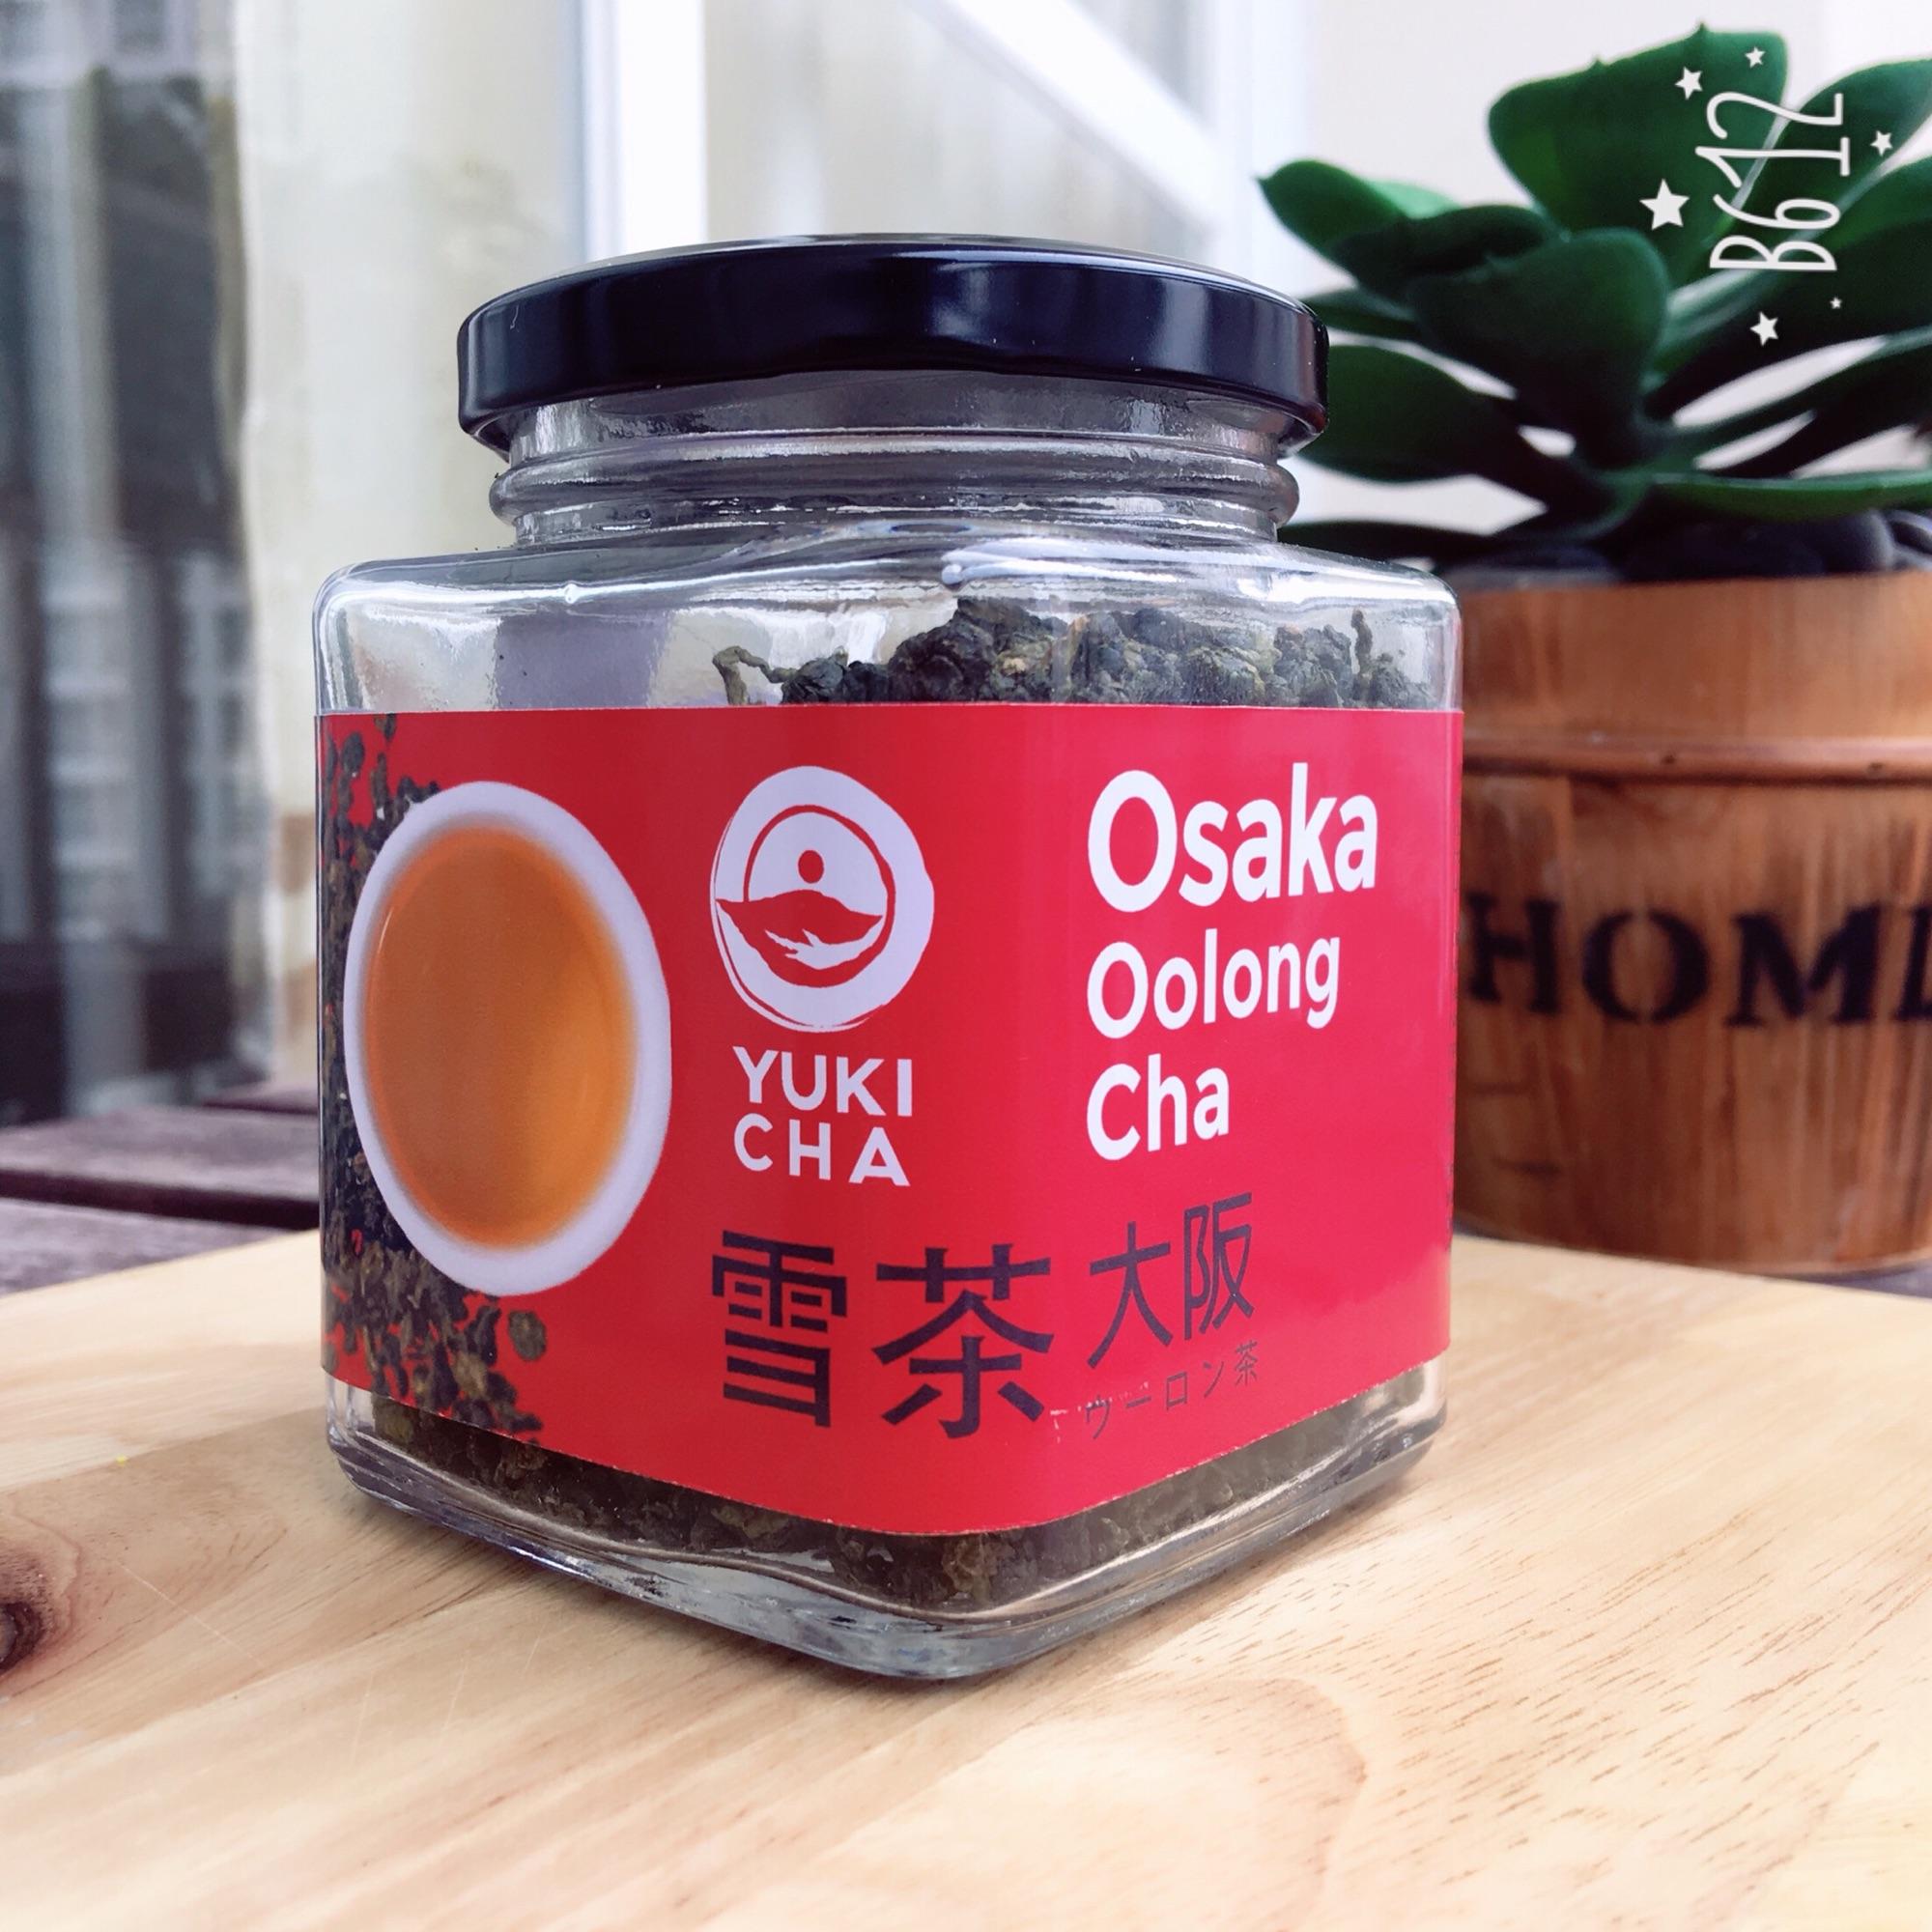 Osaka Oolong Cha - YUKICHA - 100 gram - Tặng 100g cafe Mocha Bourbon thượng hạng khi mua 02 hộp